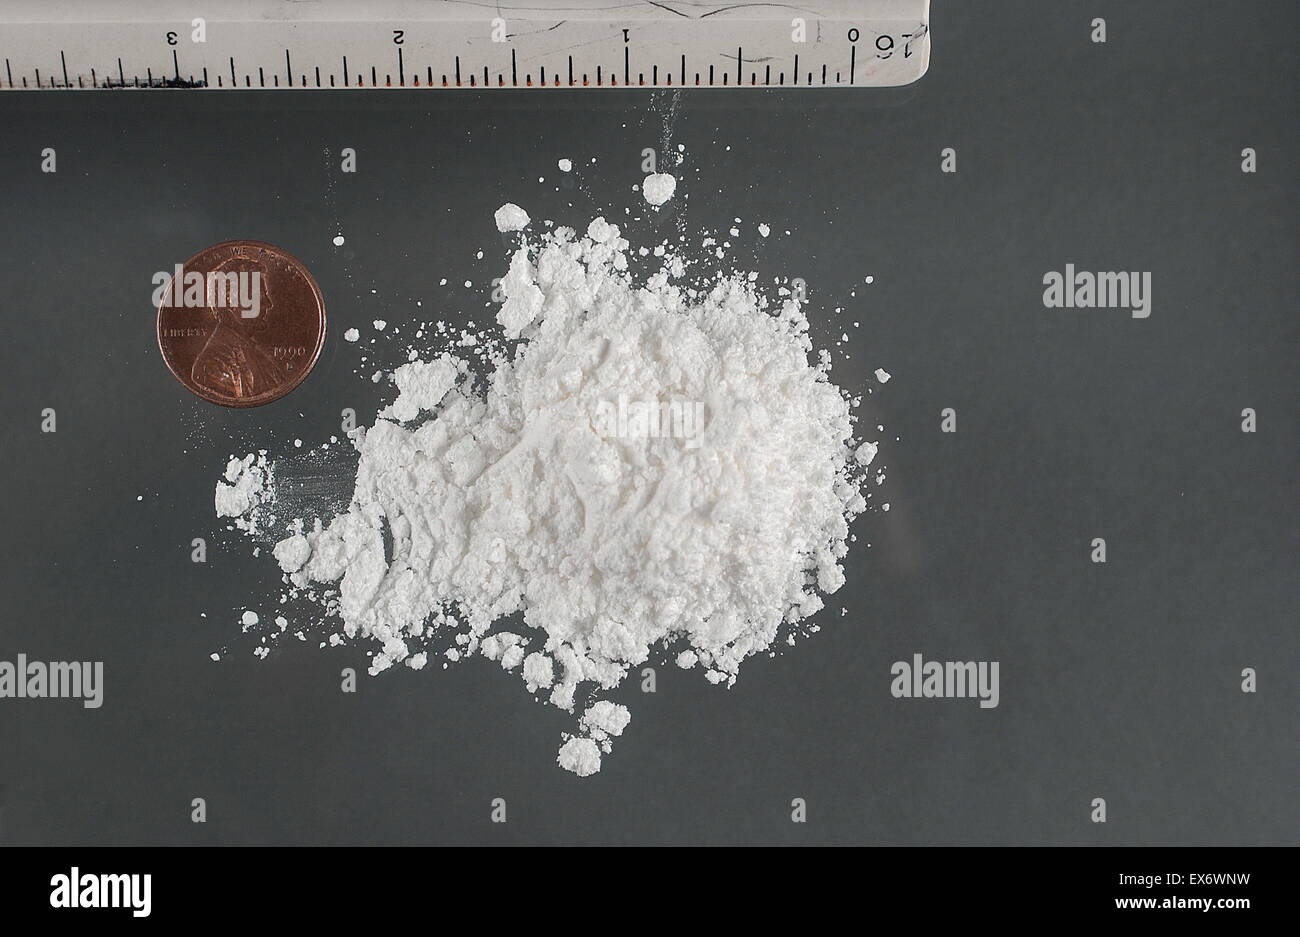 Kokain (INN) (Benzoylmethylecgonine, ein Ekgonin Derivat) ist ein Tropane Alkaloid, das aus den Blättern der Koka-Pflanze gewonnen wird. Es ist ein Stimulans, Appetitzügler, und eine unspezifische Spannung gated Natrium-Kanal-Blocker, die wiederum verursachen Stockfoto